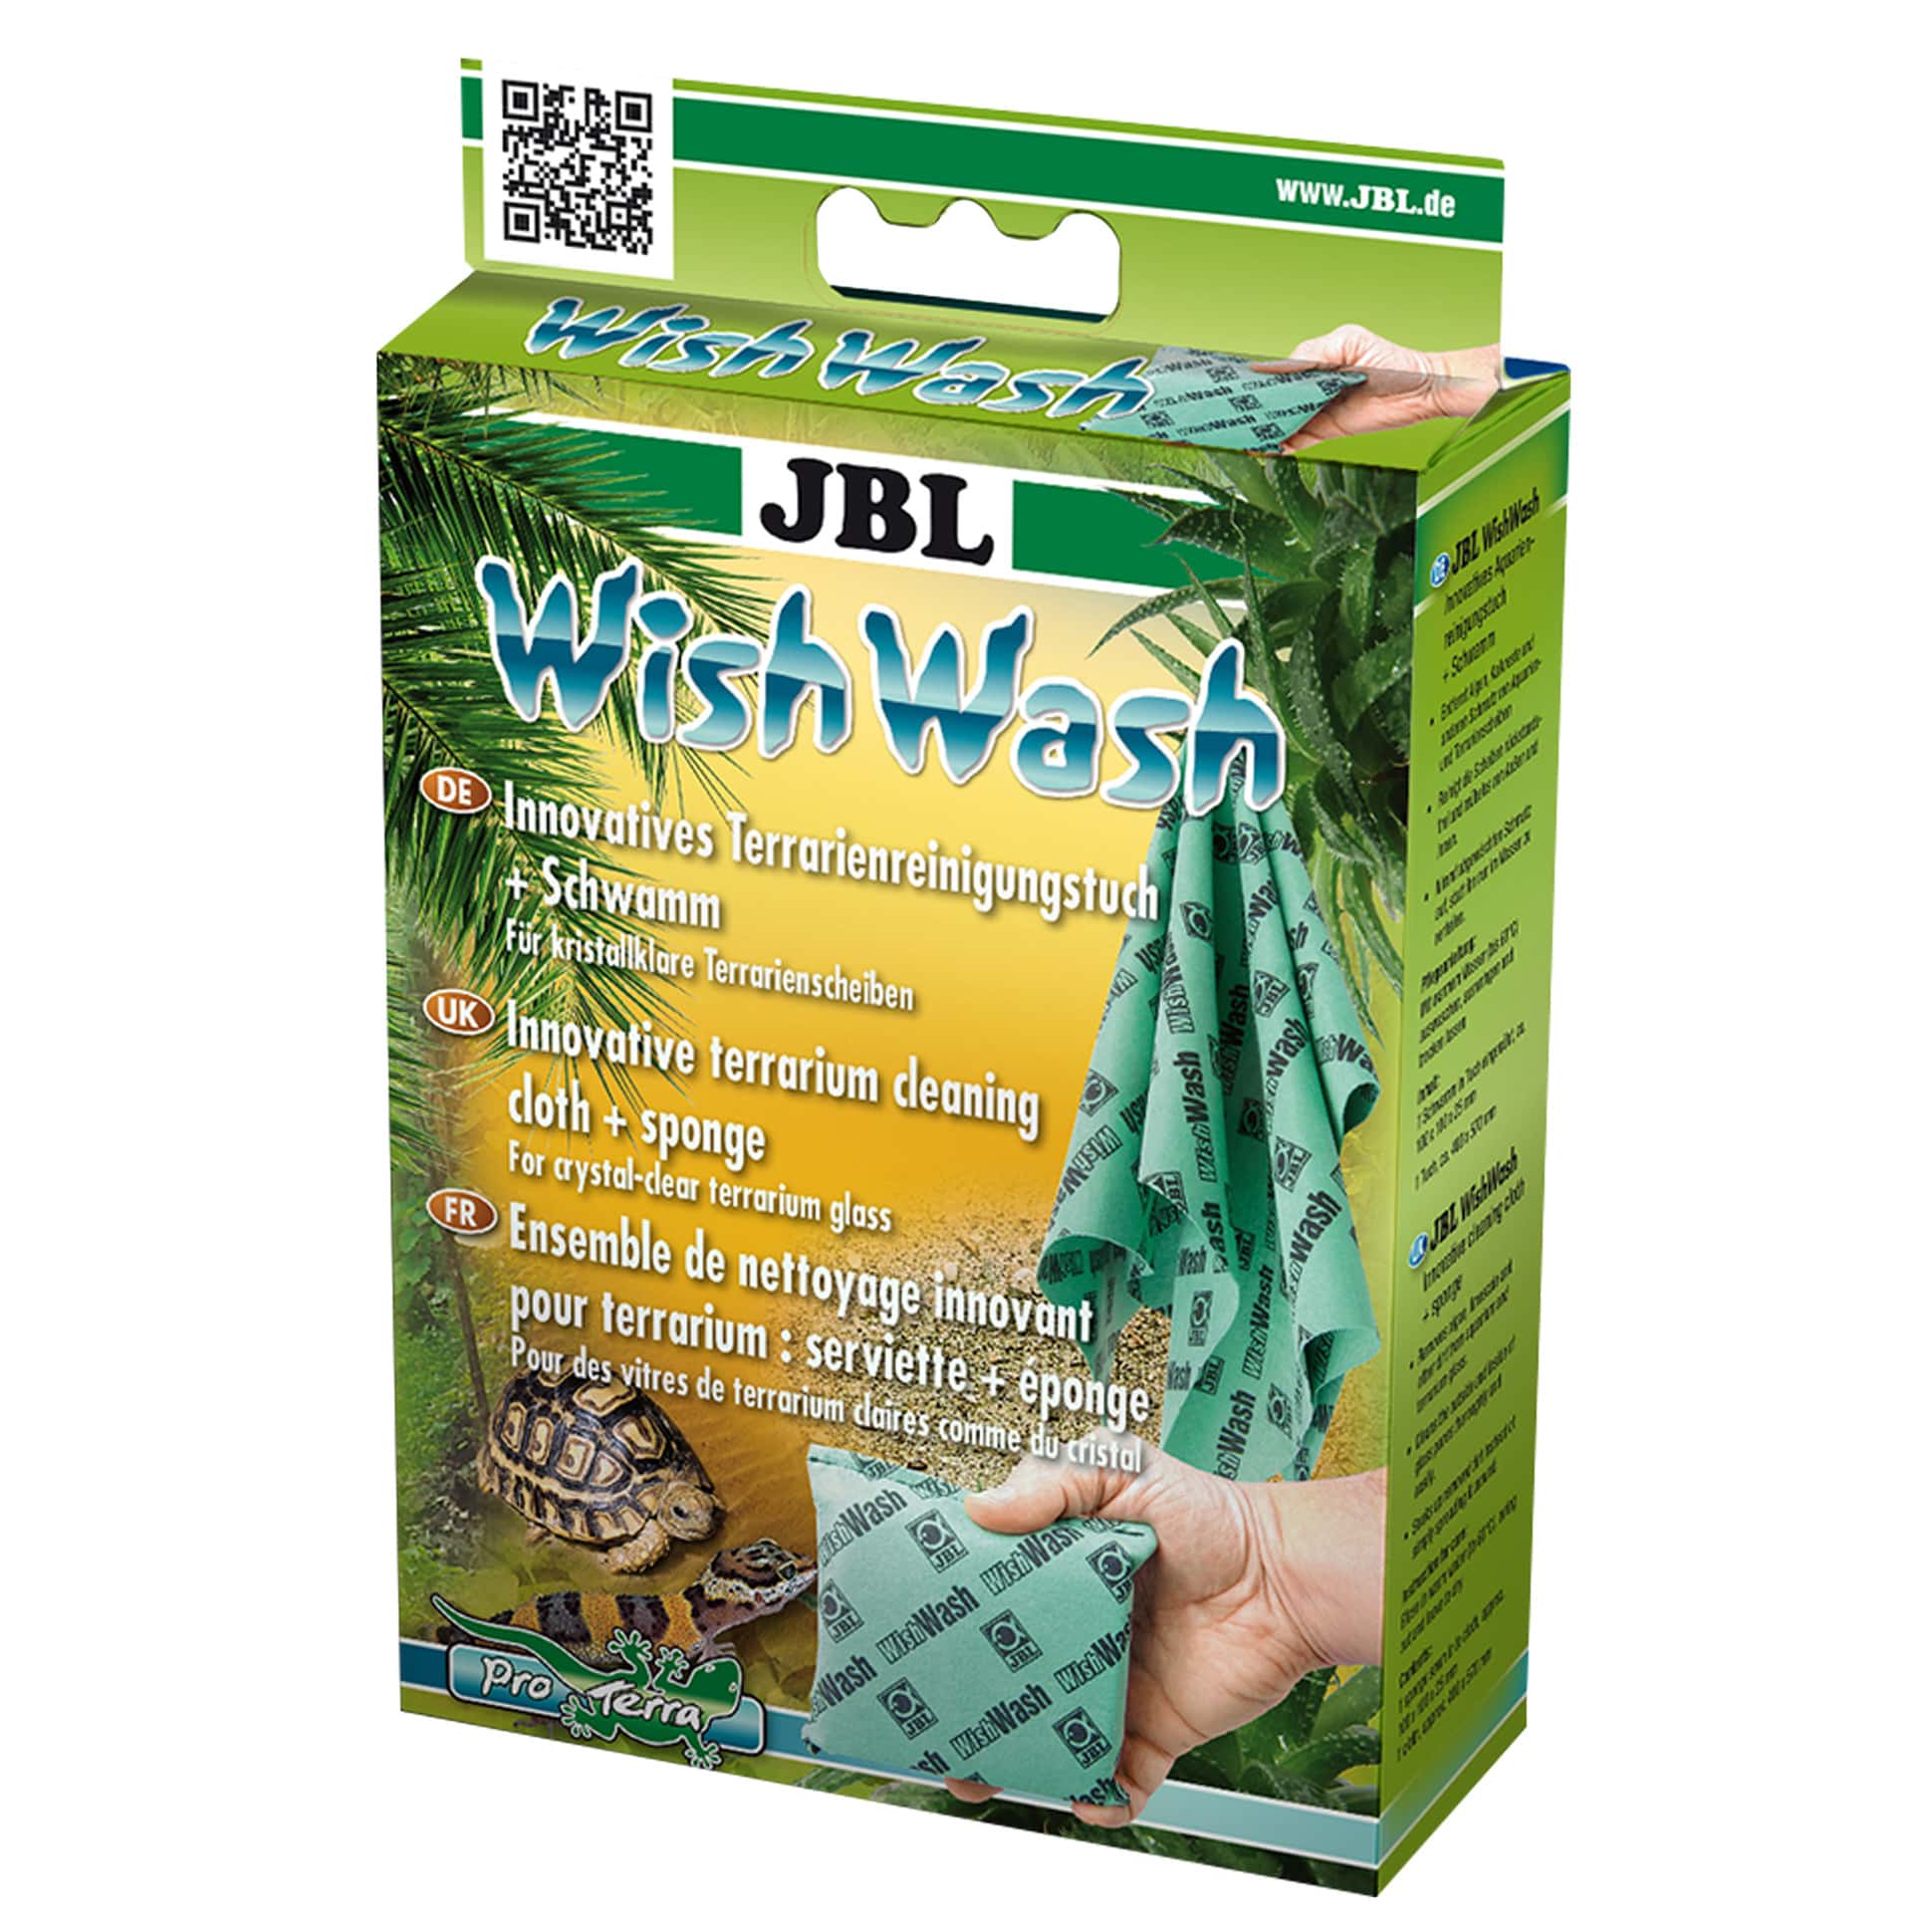 jbl-wishwash-aqua-set-de-nettoyage-innovant-pour-aquarium-eponge-serviette-2-min